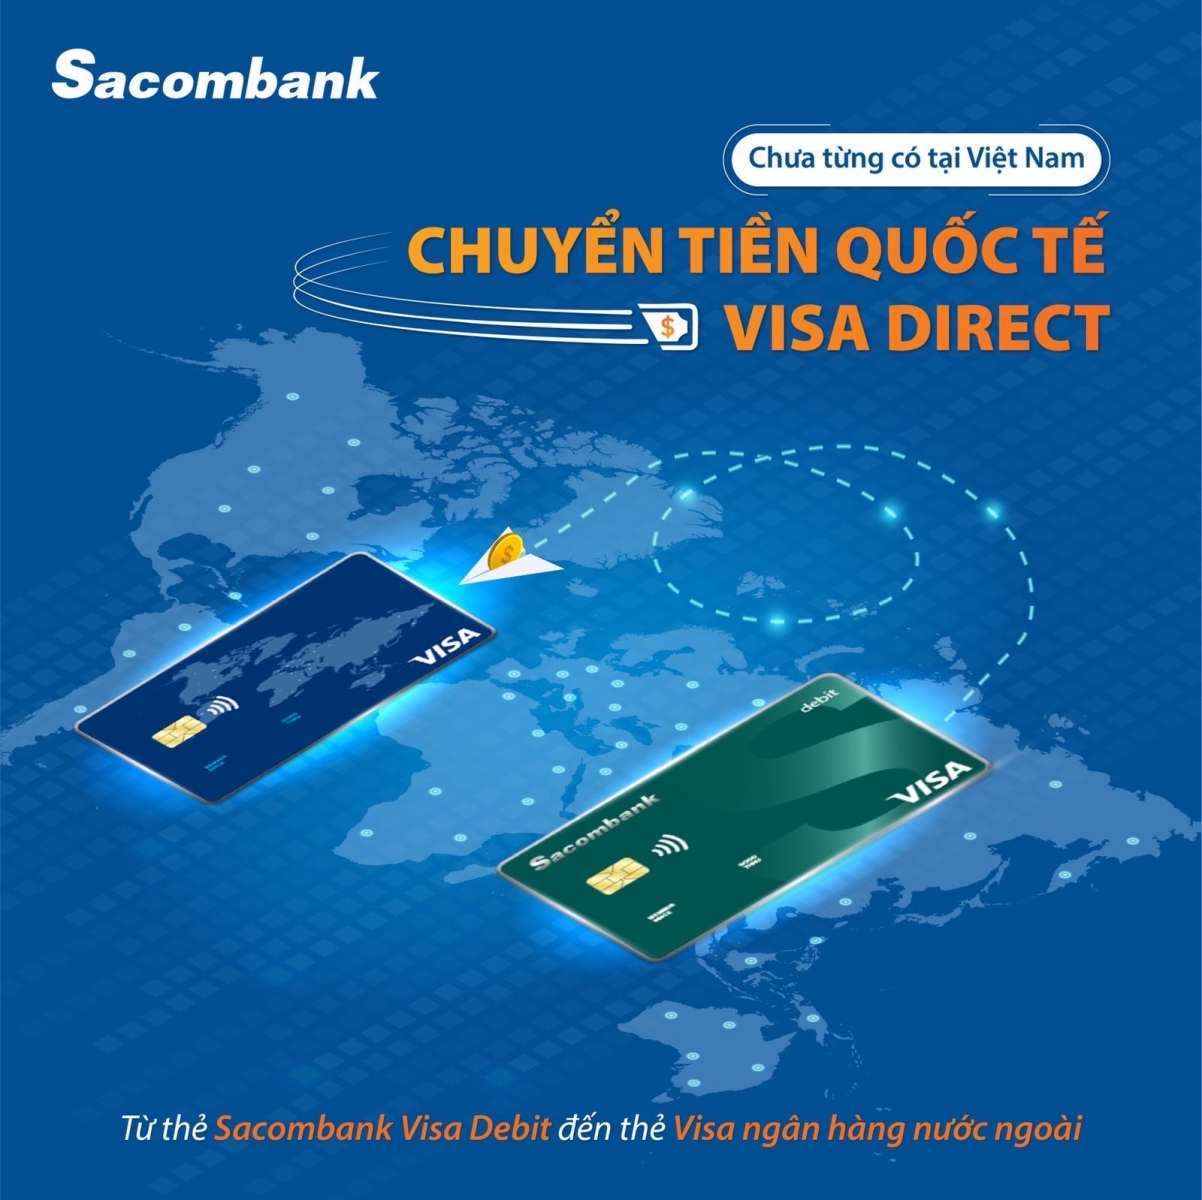 Visa Sacombank: Thẻ Visa Sacombank là công cụ tài chính hàng đầu giúp bạn thực hiện các giao dịch một cách nhanh chóng và dễ dàng. Với tính năng tiện lợi và an toàn, bạn có thể hoàn thành mọi giao dịch mua sắm, thanh toán hóa đơn hay rút tiền mặt tại bất kỳ đâu trong thế giới này. Hãy xem hình ảnh liên quan để tìm hiểu thêm về những tiện ích mà thẻ Visa Sacombank mang lại cho bạn.